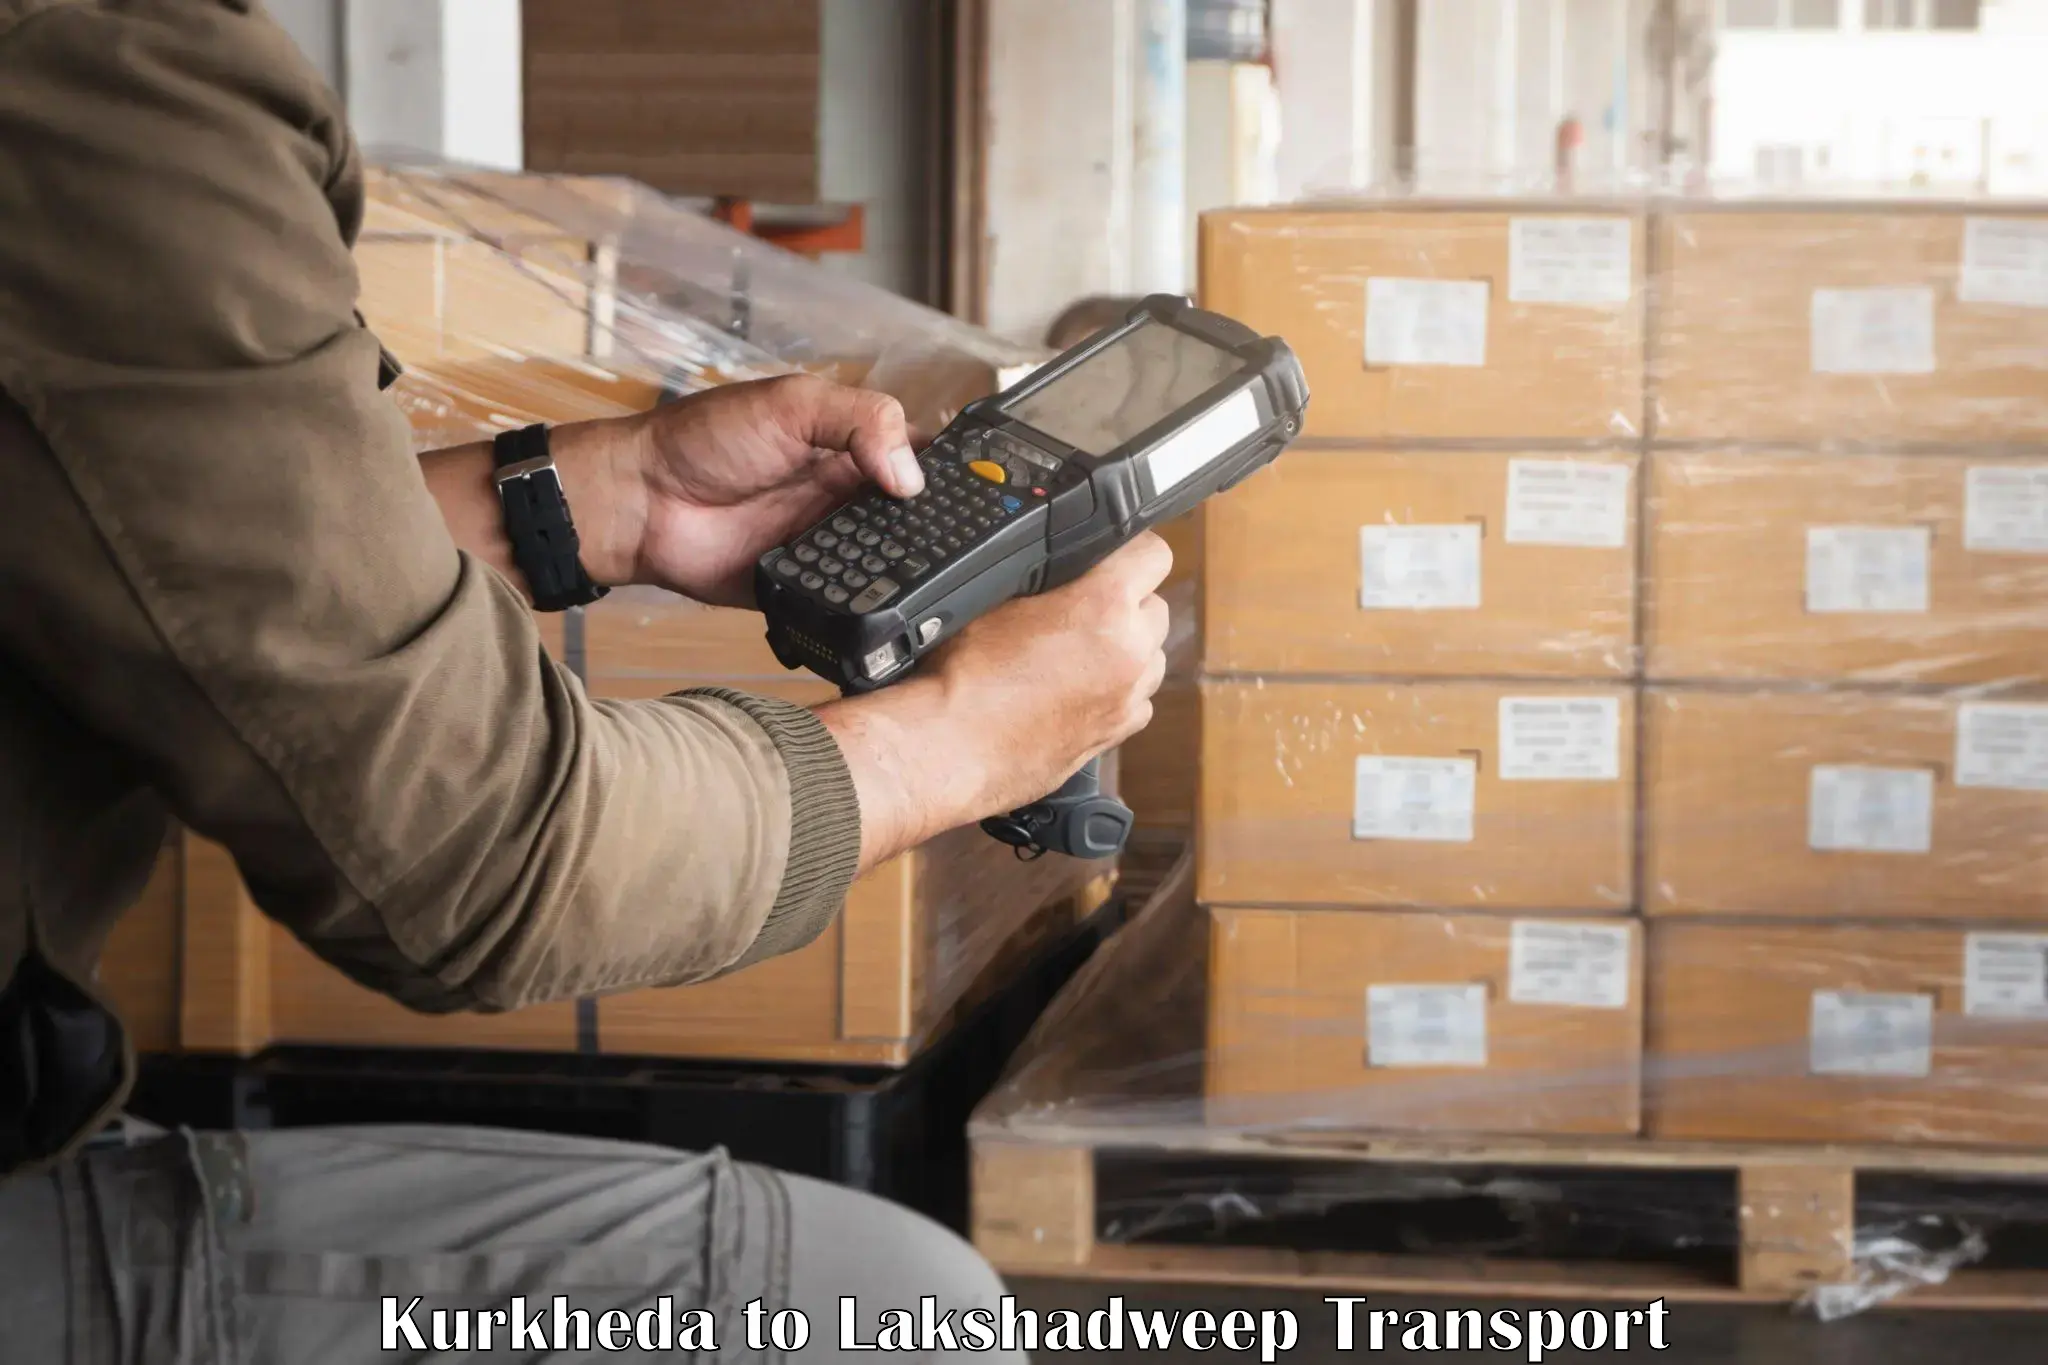 Shipping partner Kurkheda to Lakshadweep